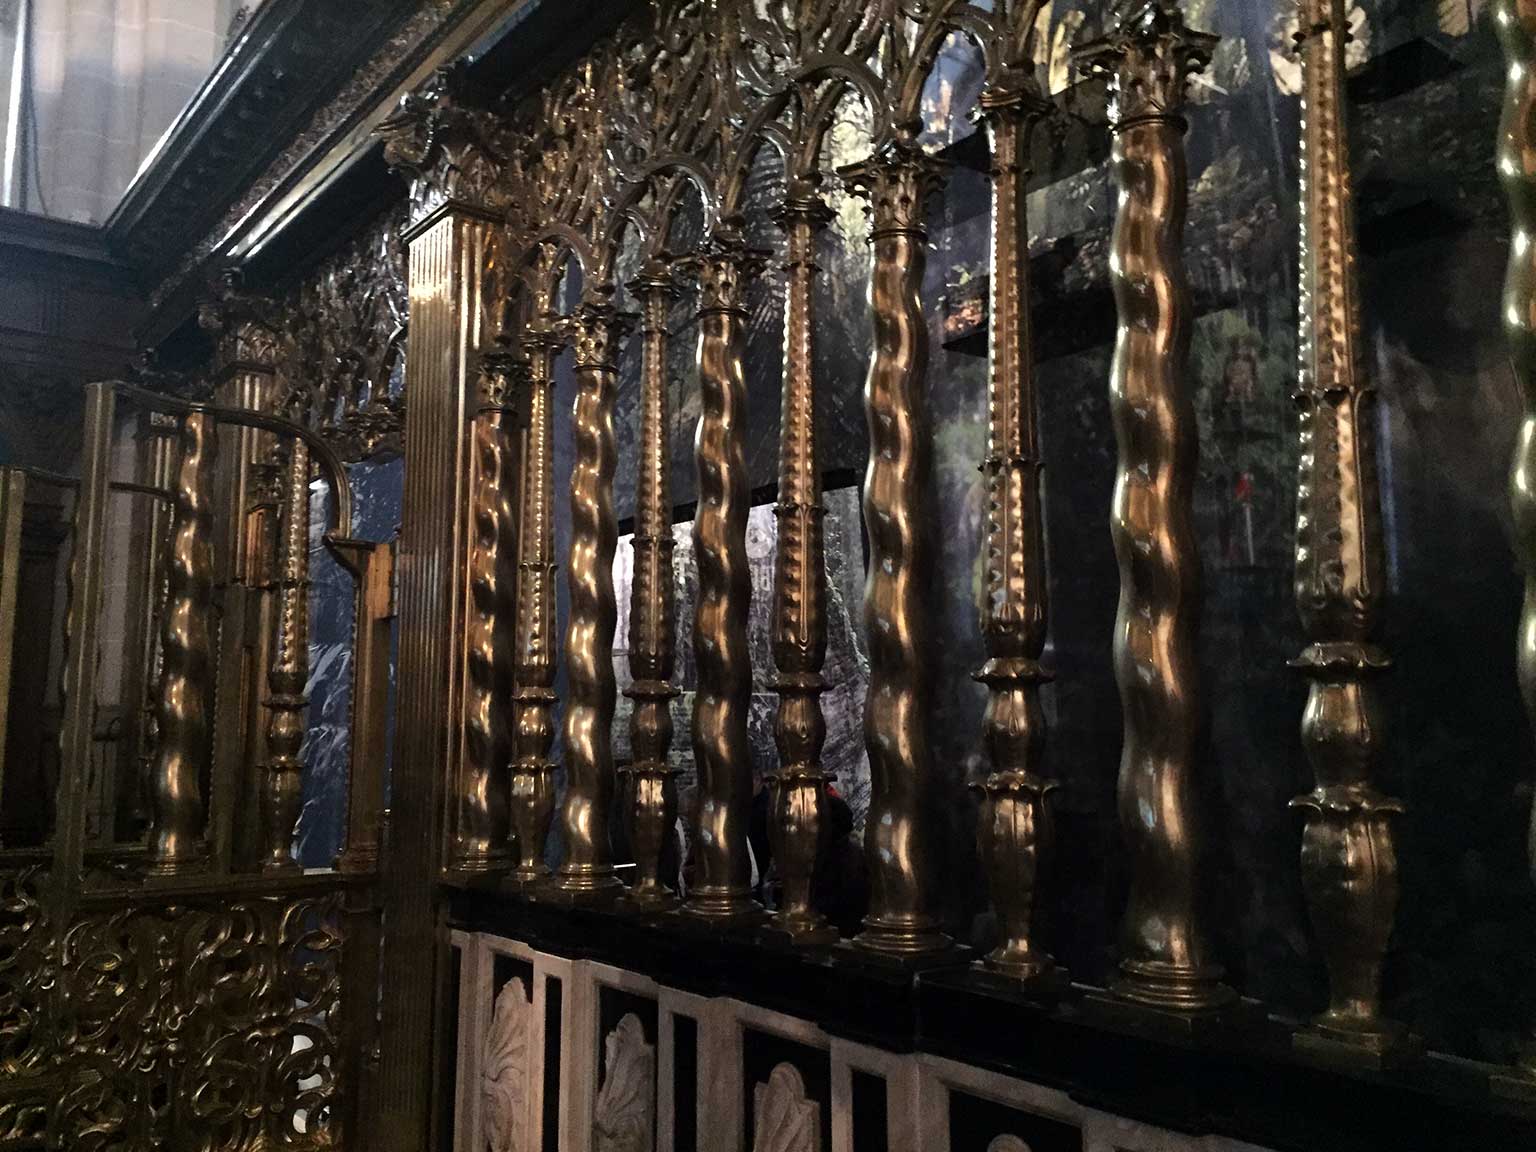 Detail of the brass choir gate in the Nieuwe Kerk, Amsterdam